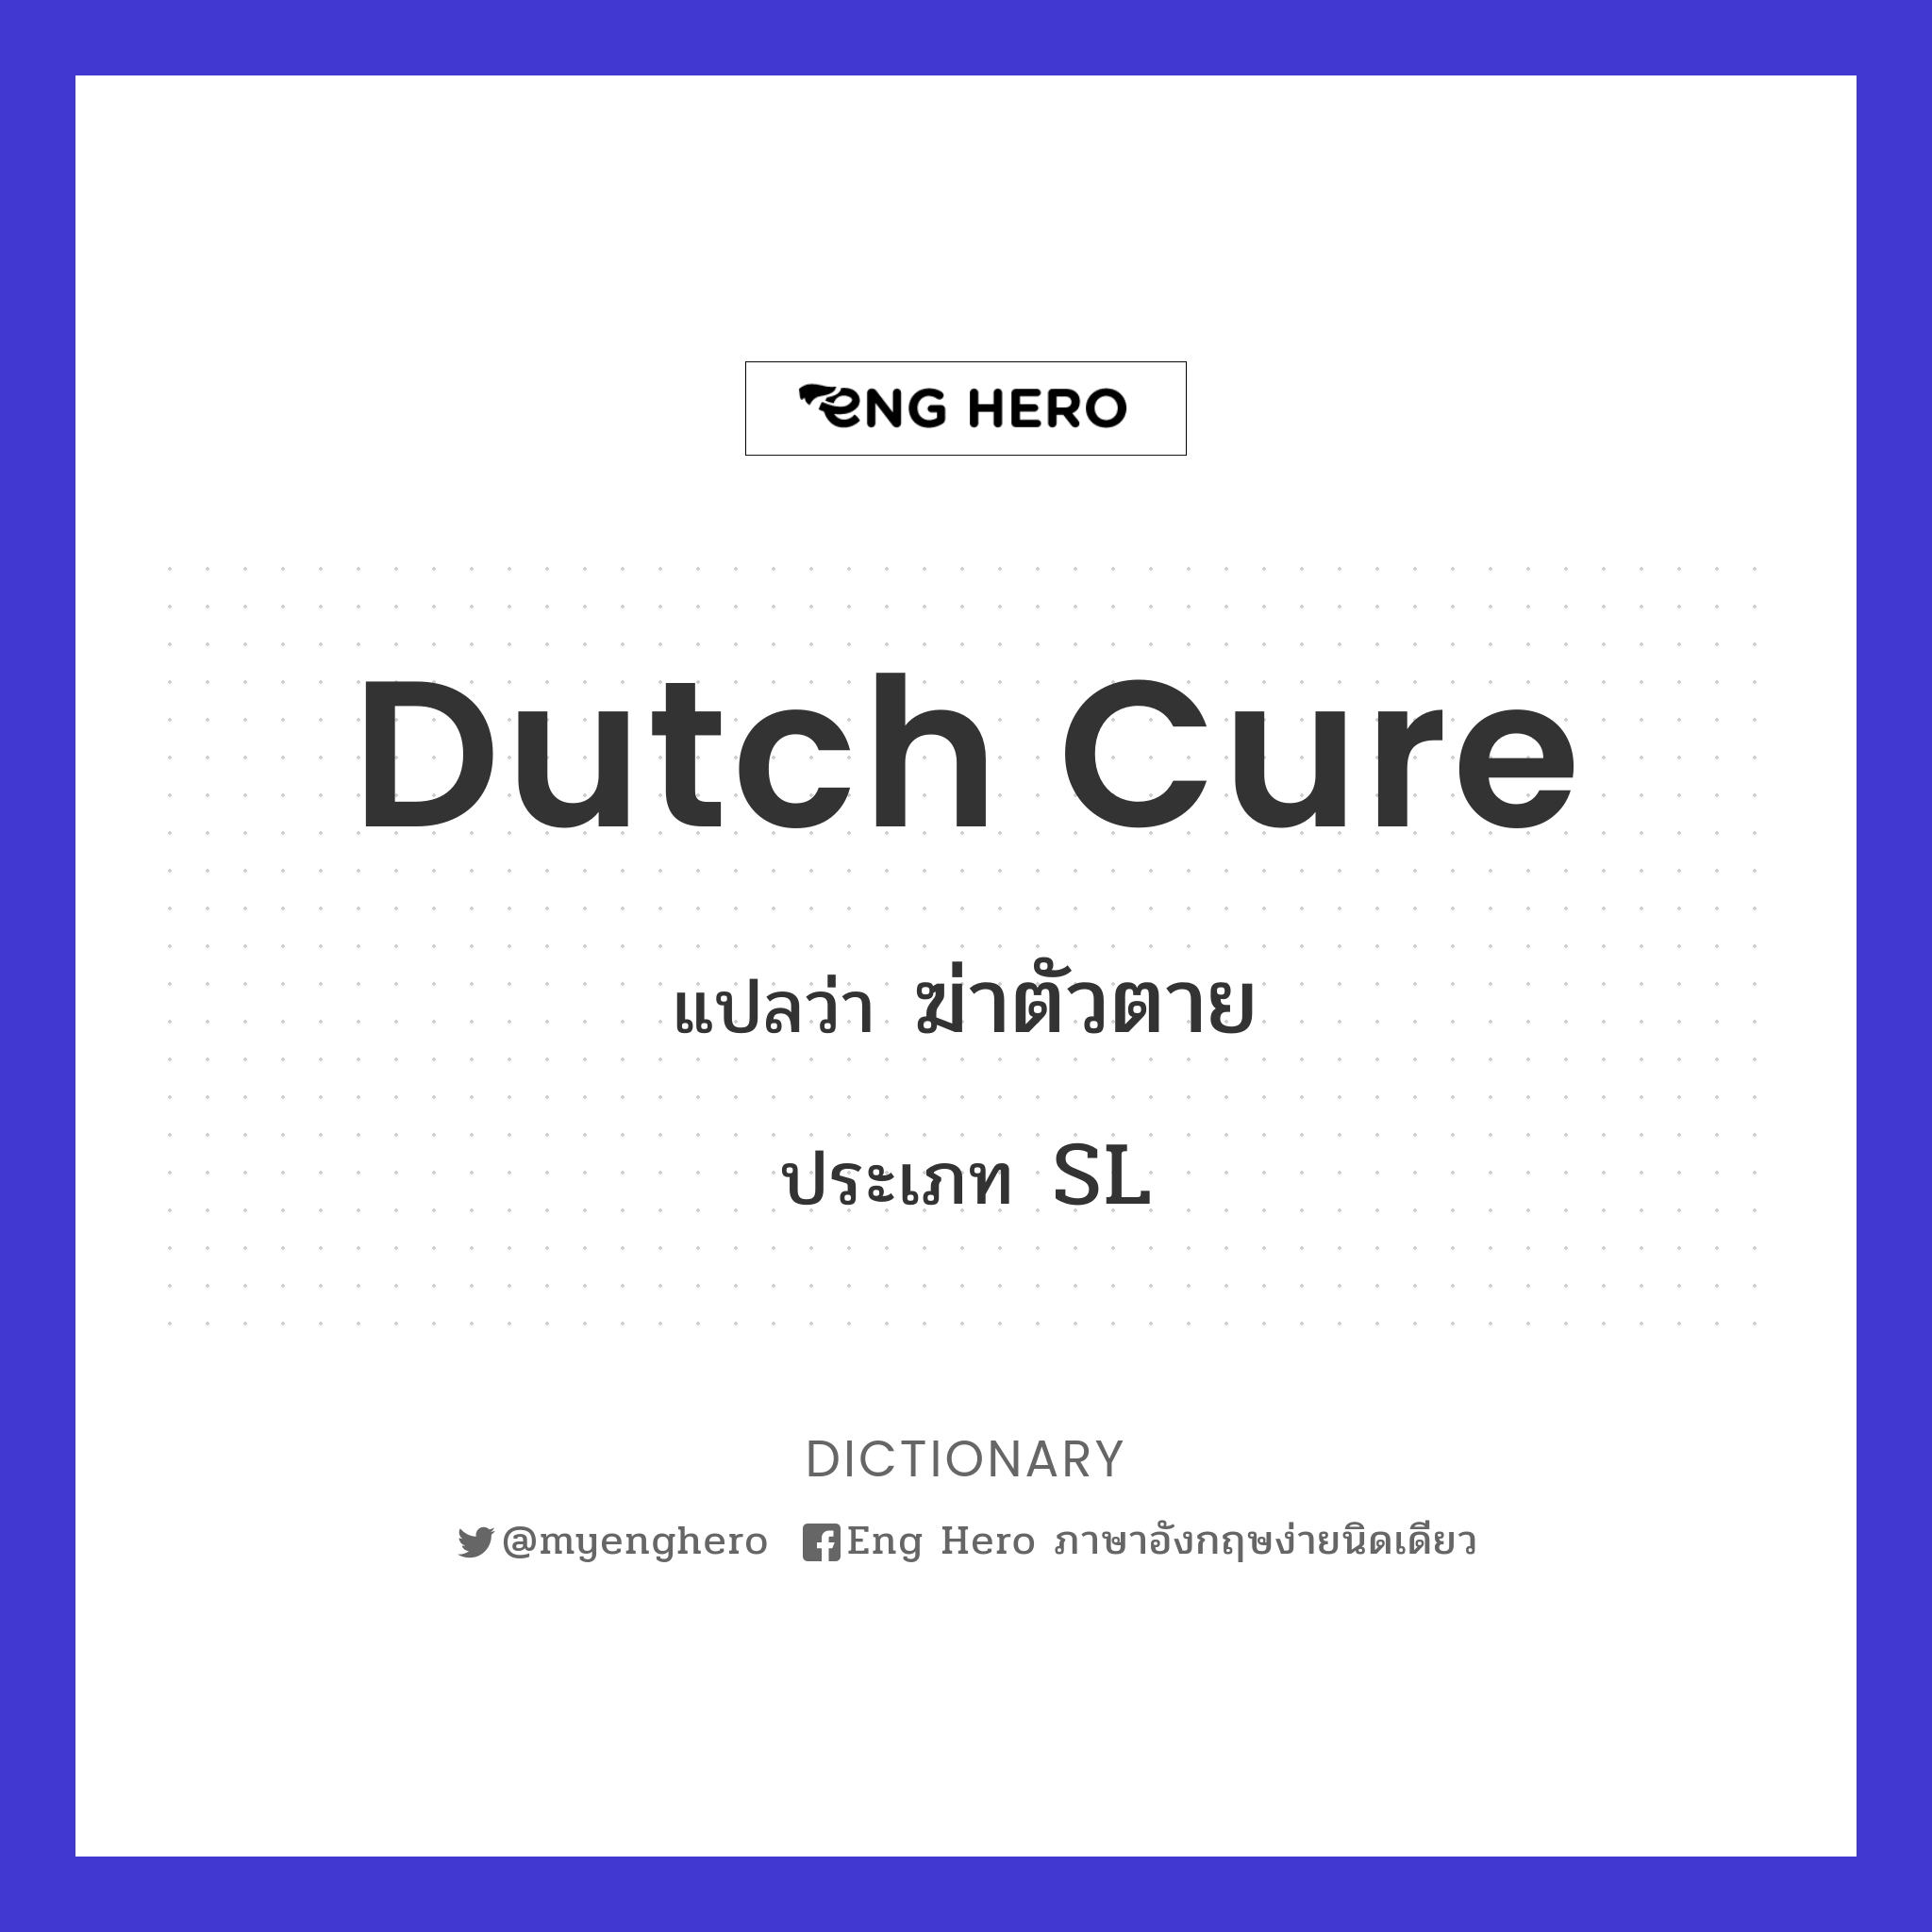 Dutch cure